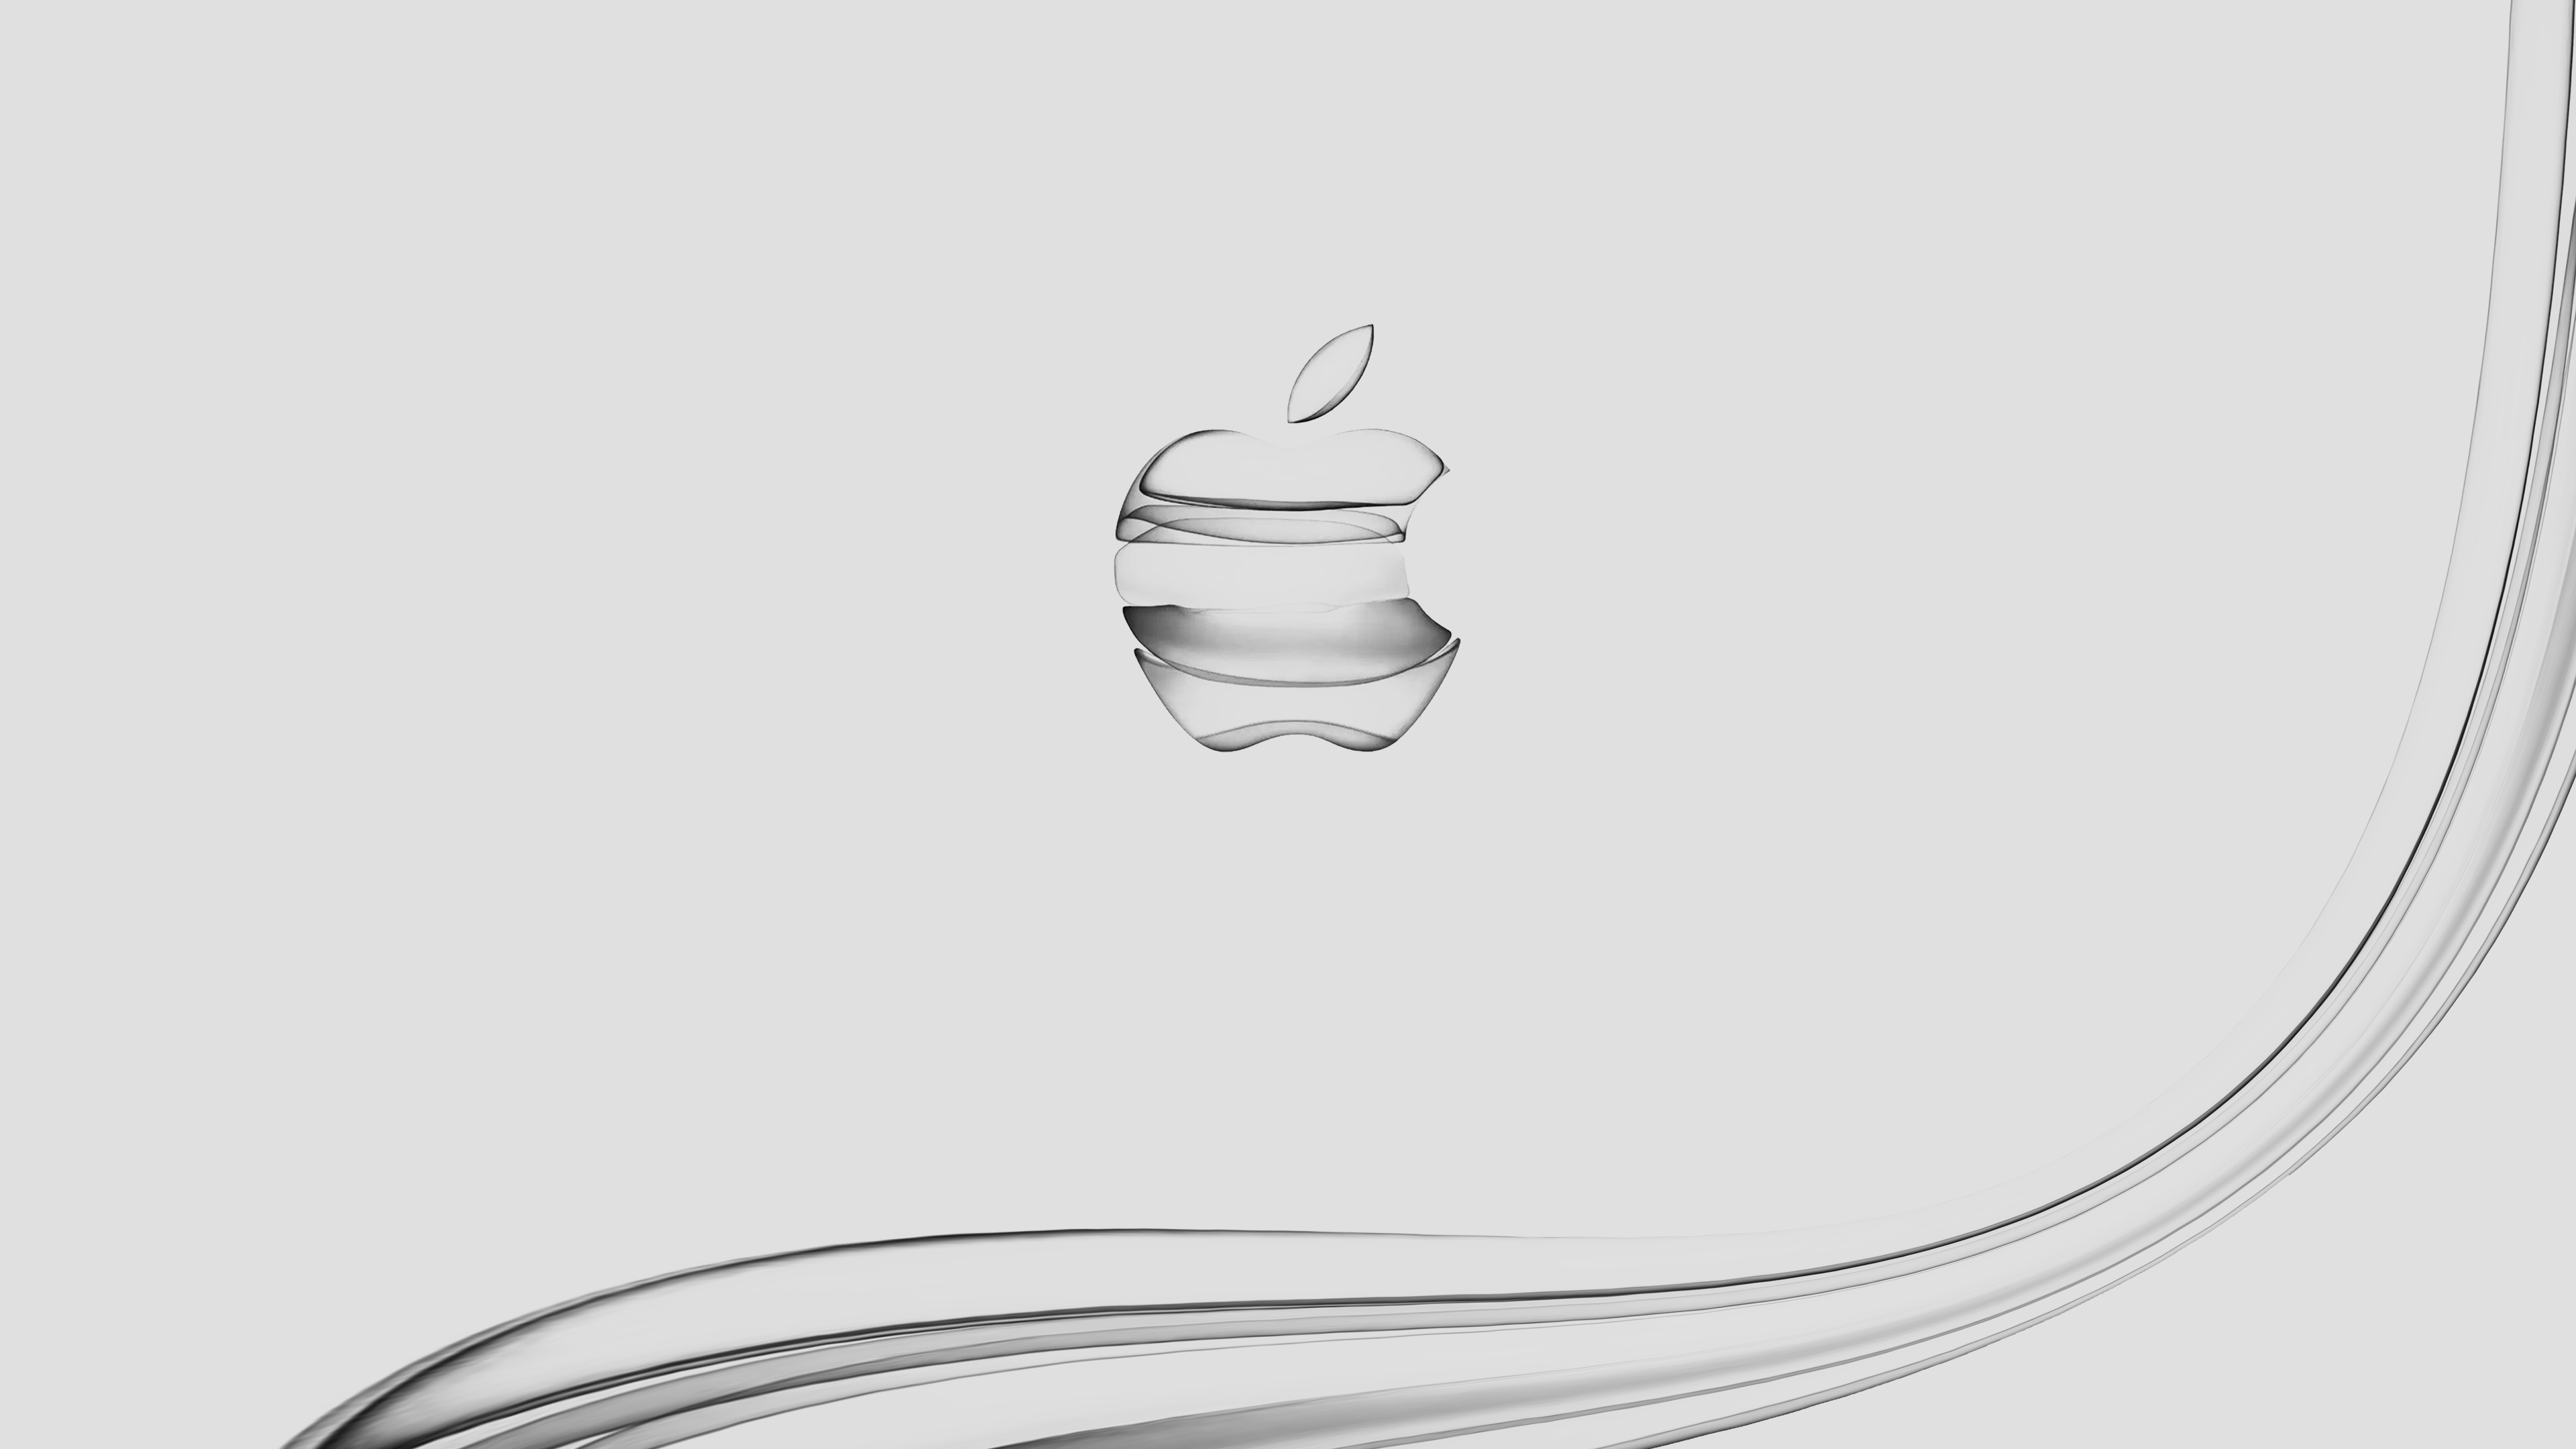 Ipad, Air, 它, Ipad Pro, Apple 壁纸 3840x2160 允许